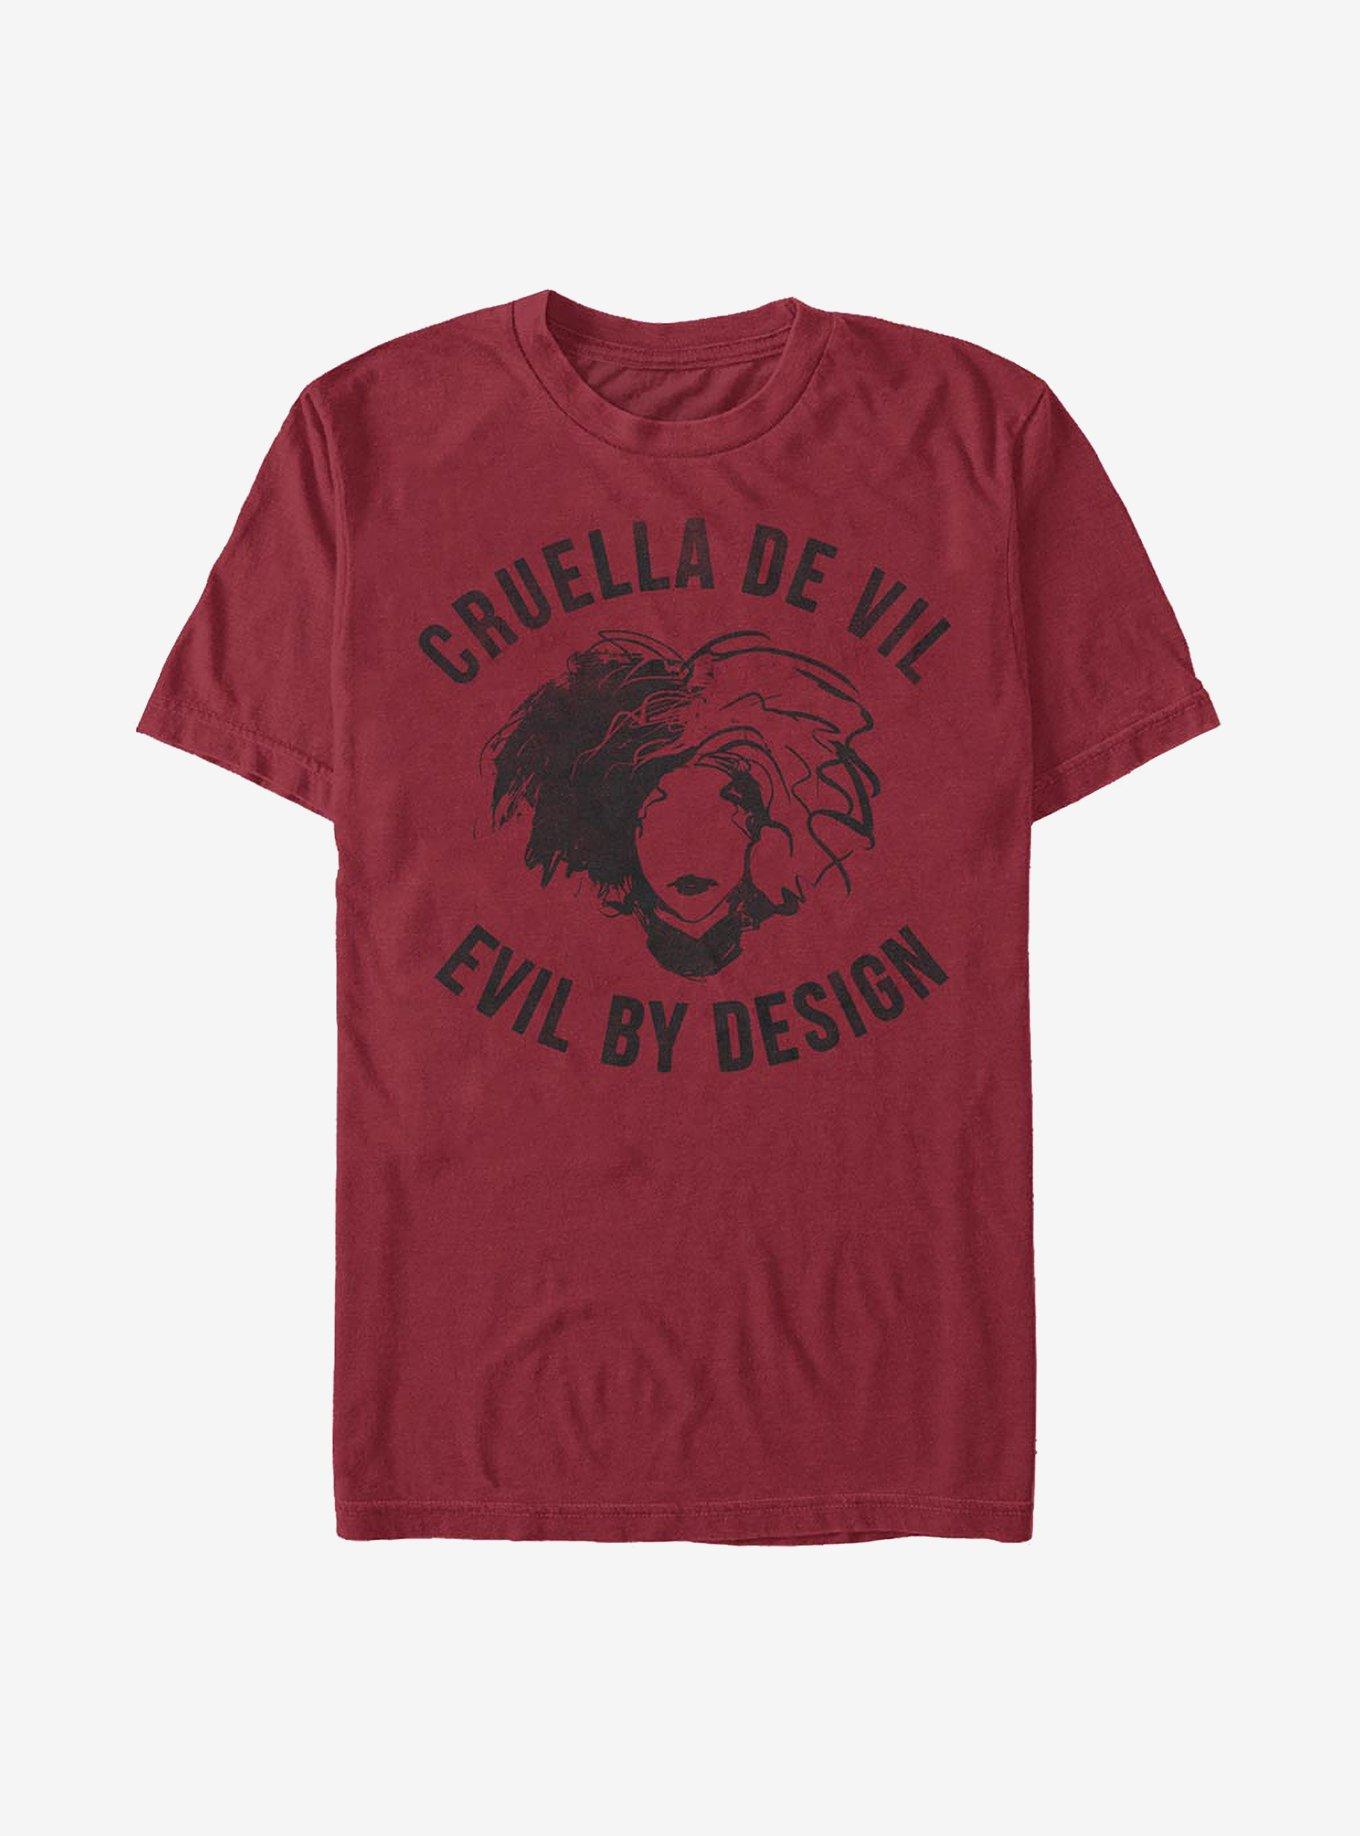 Disney Cruella Evil By Design T-Shirt, CARDINAL, hi-res